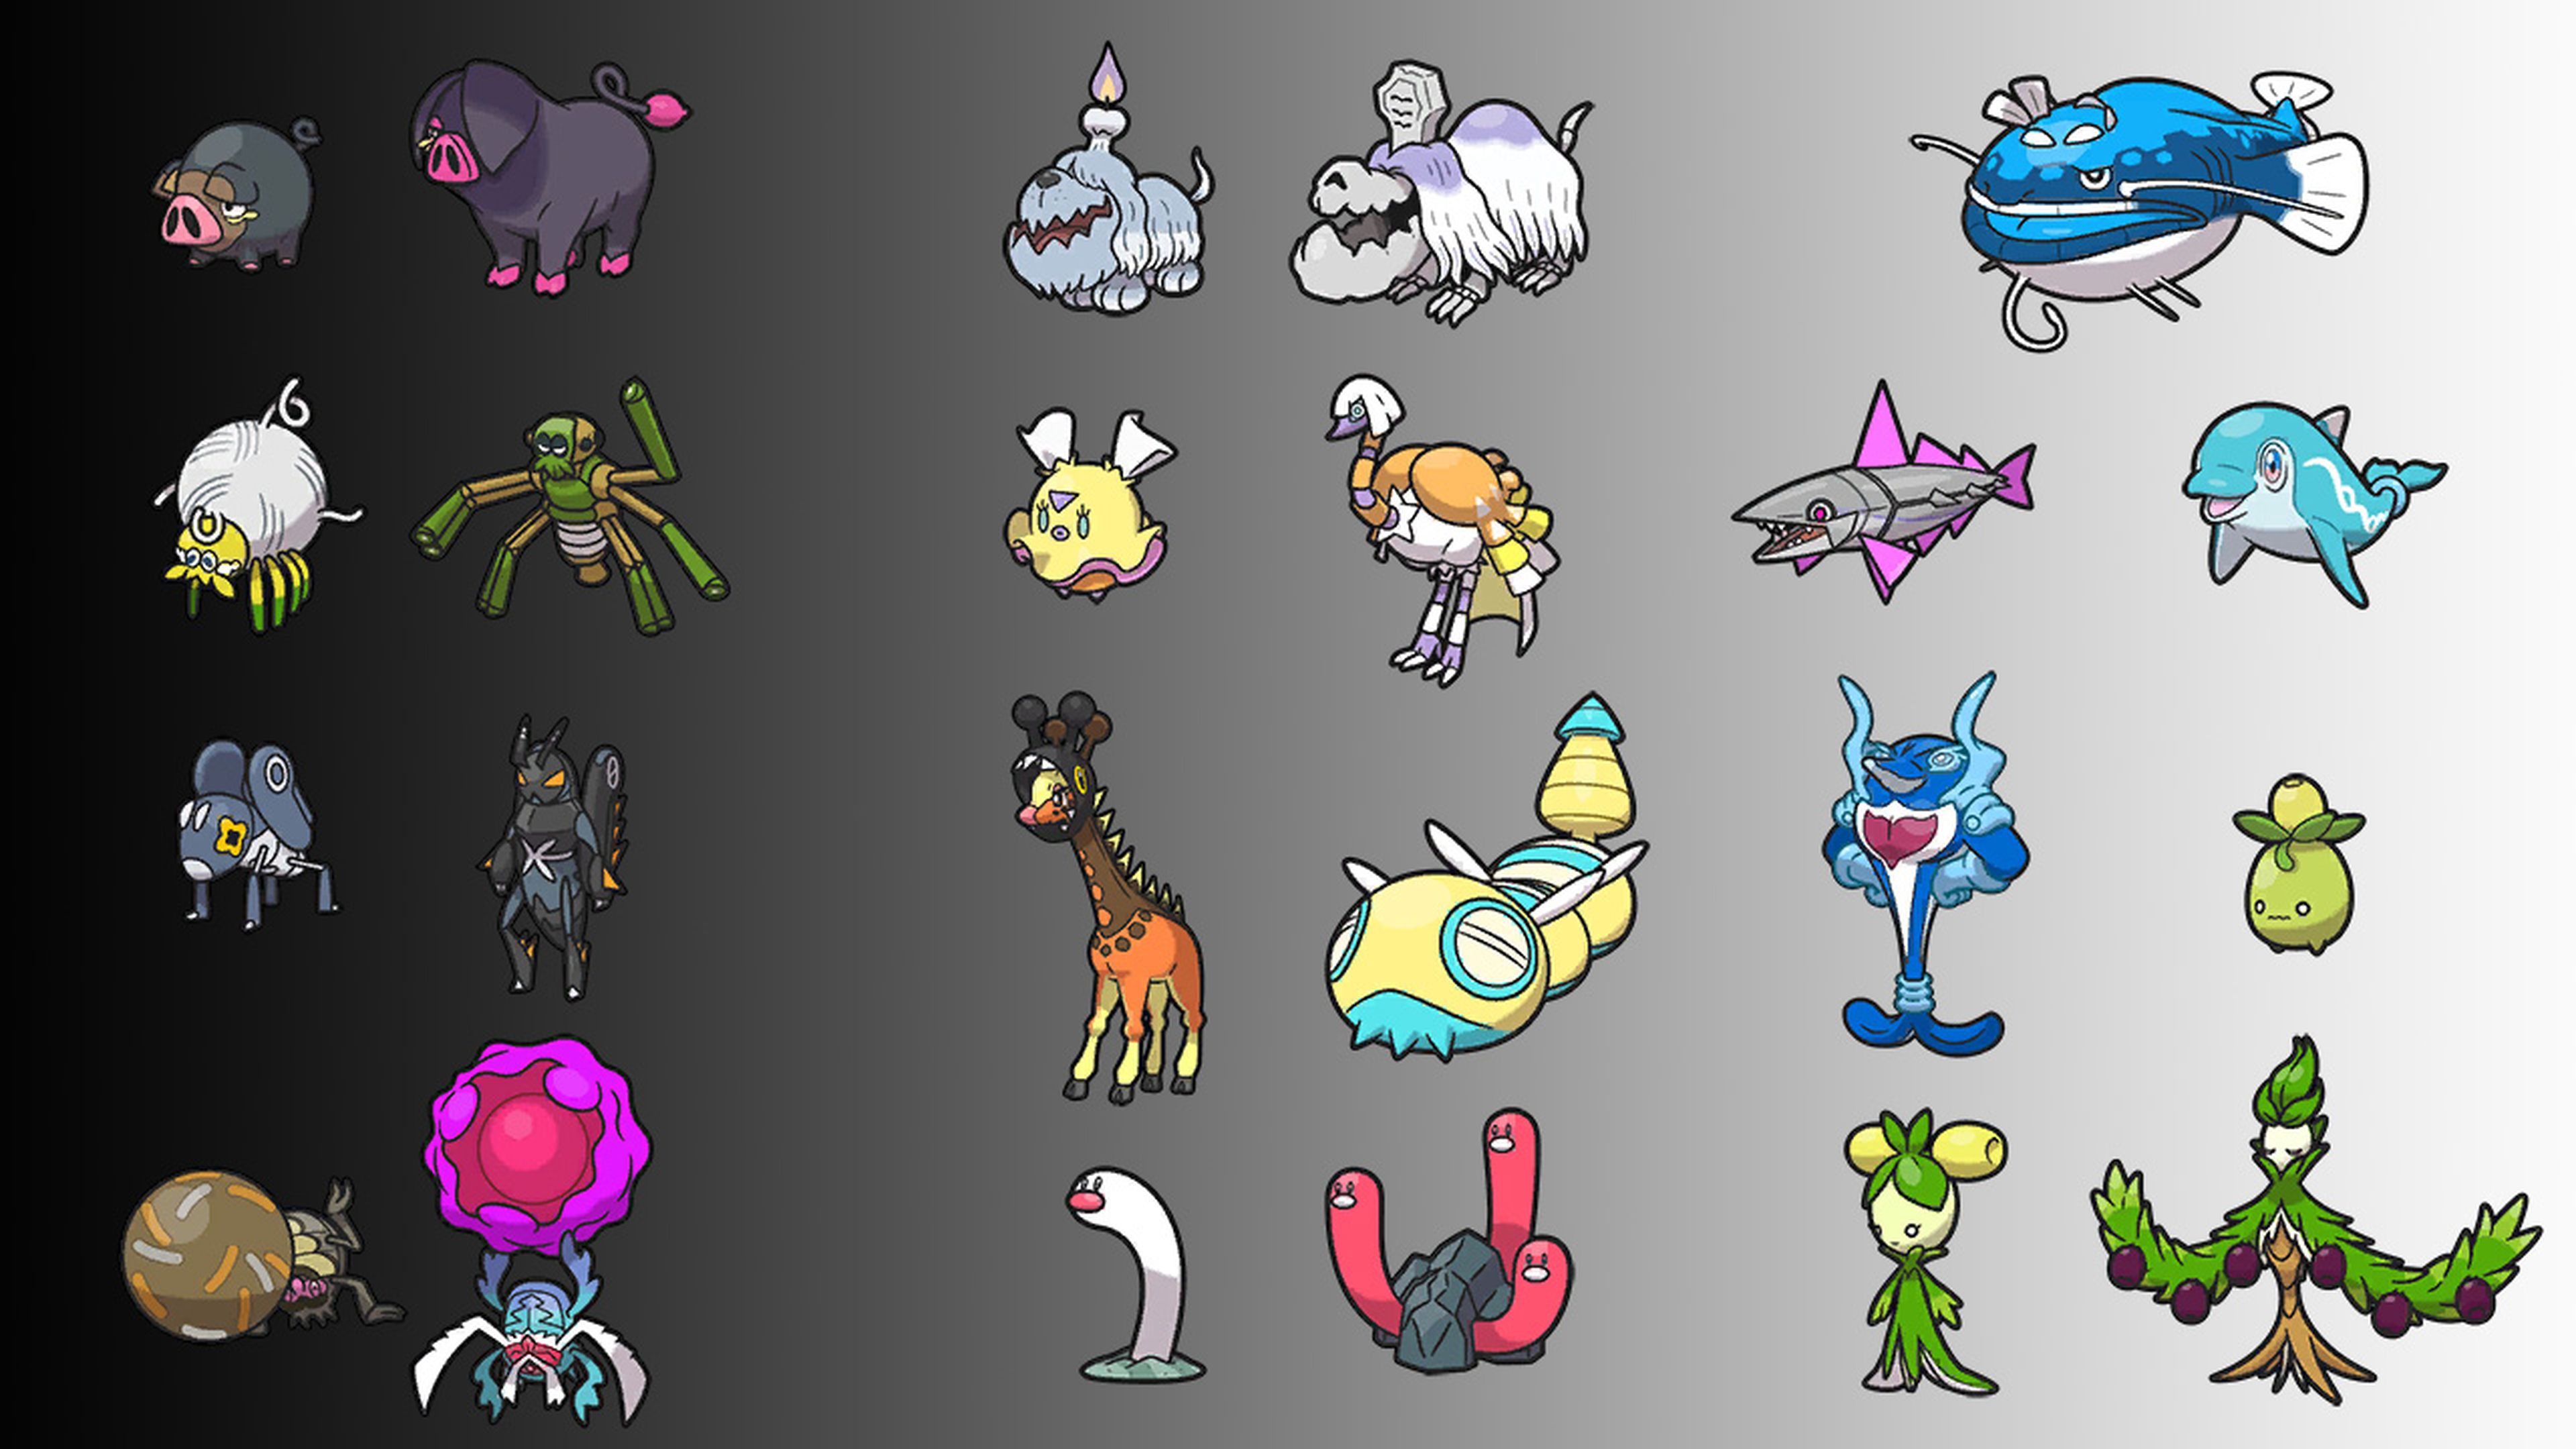 Pokémon Escarlata y Púrpura: Pokédex de Paldea - todos los Pokémon de  Novena Generación